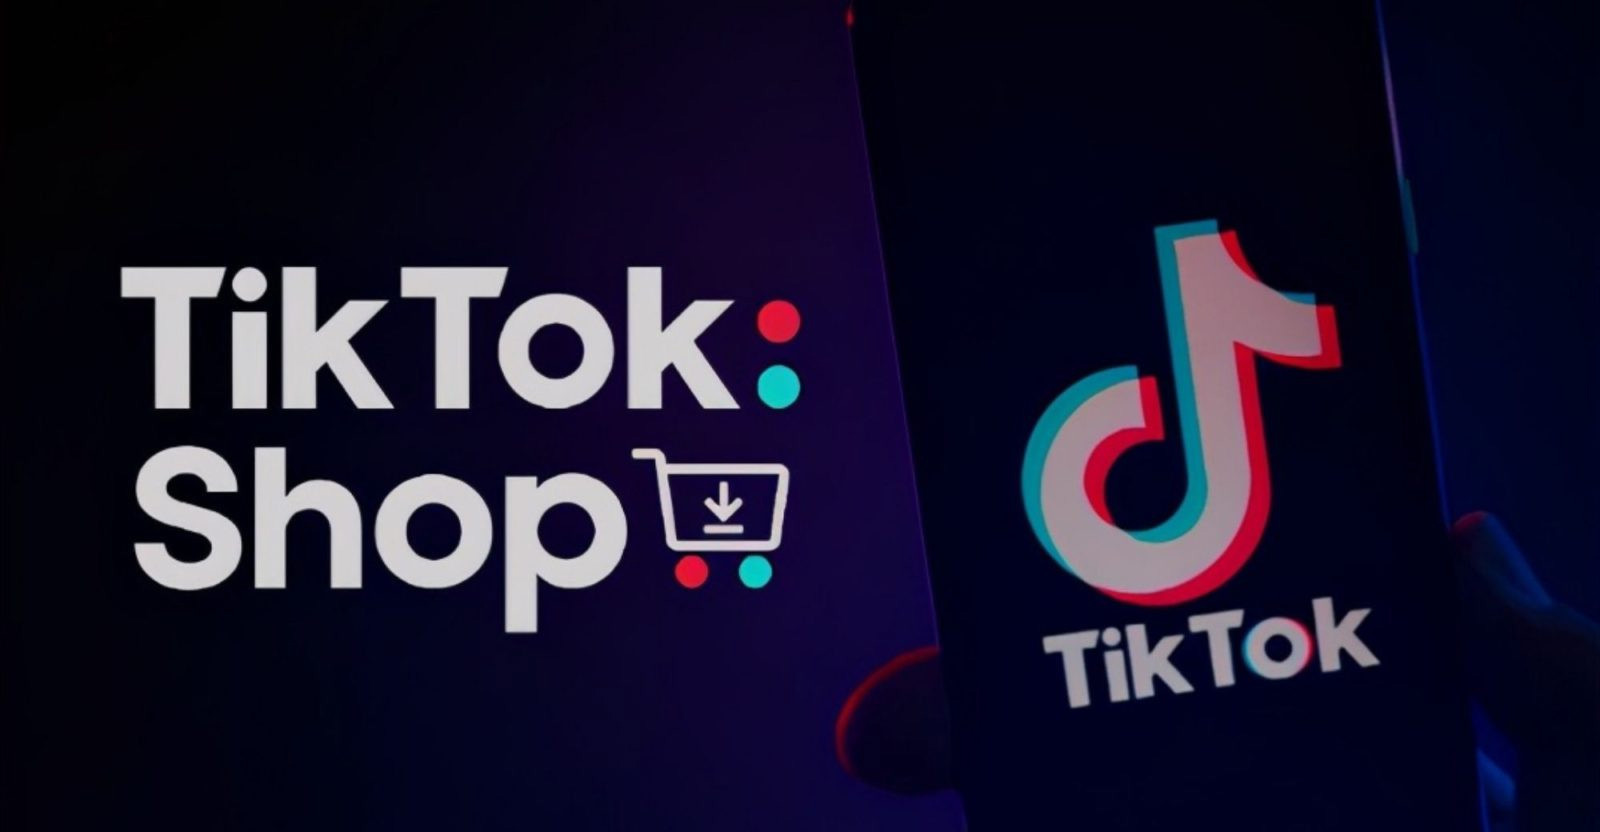 TikTok Shop là gì? Cách đăng ký TikTok Shop đơn giản - META.vn